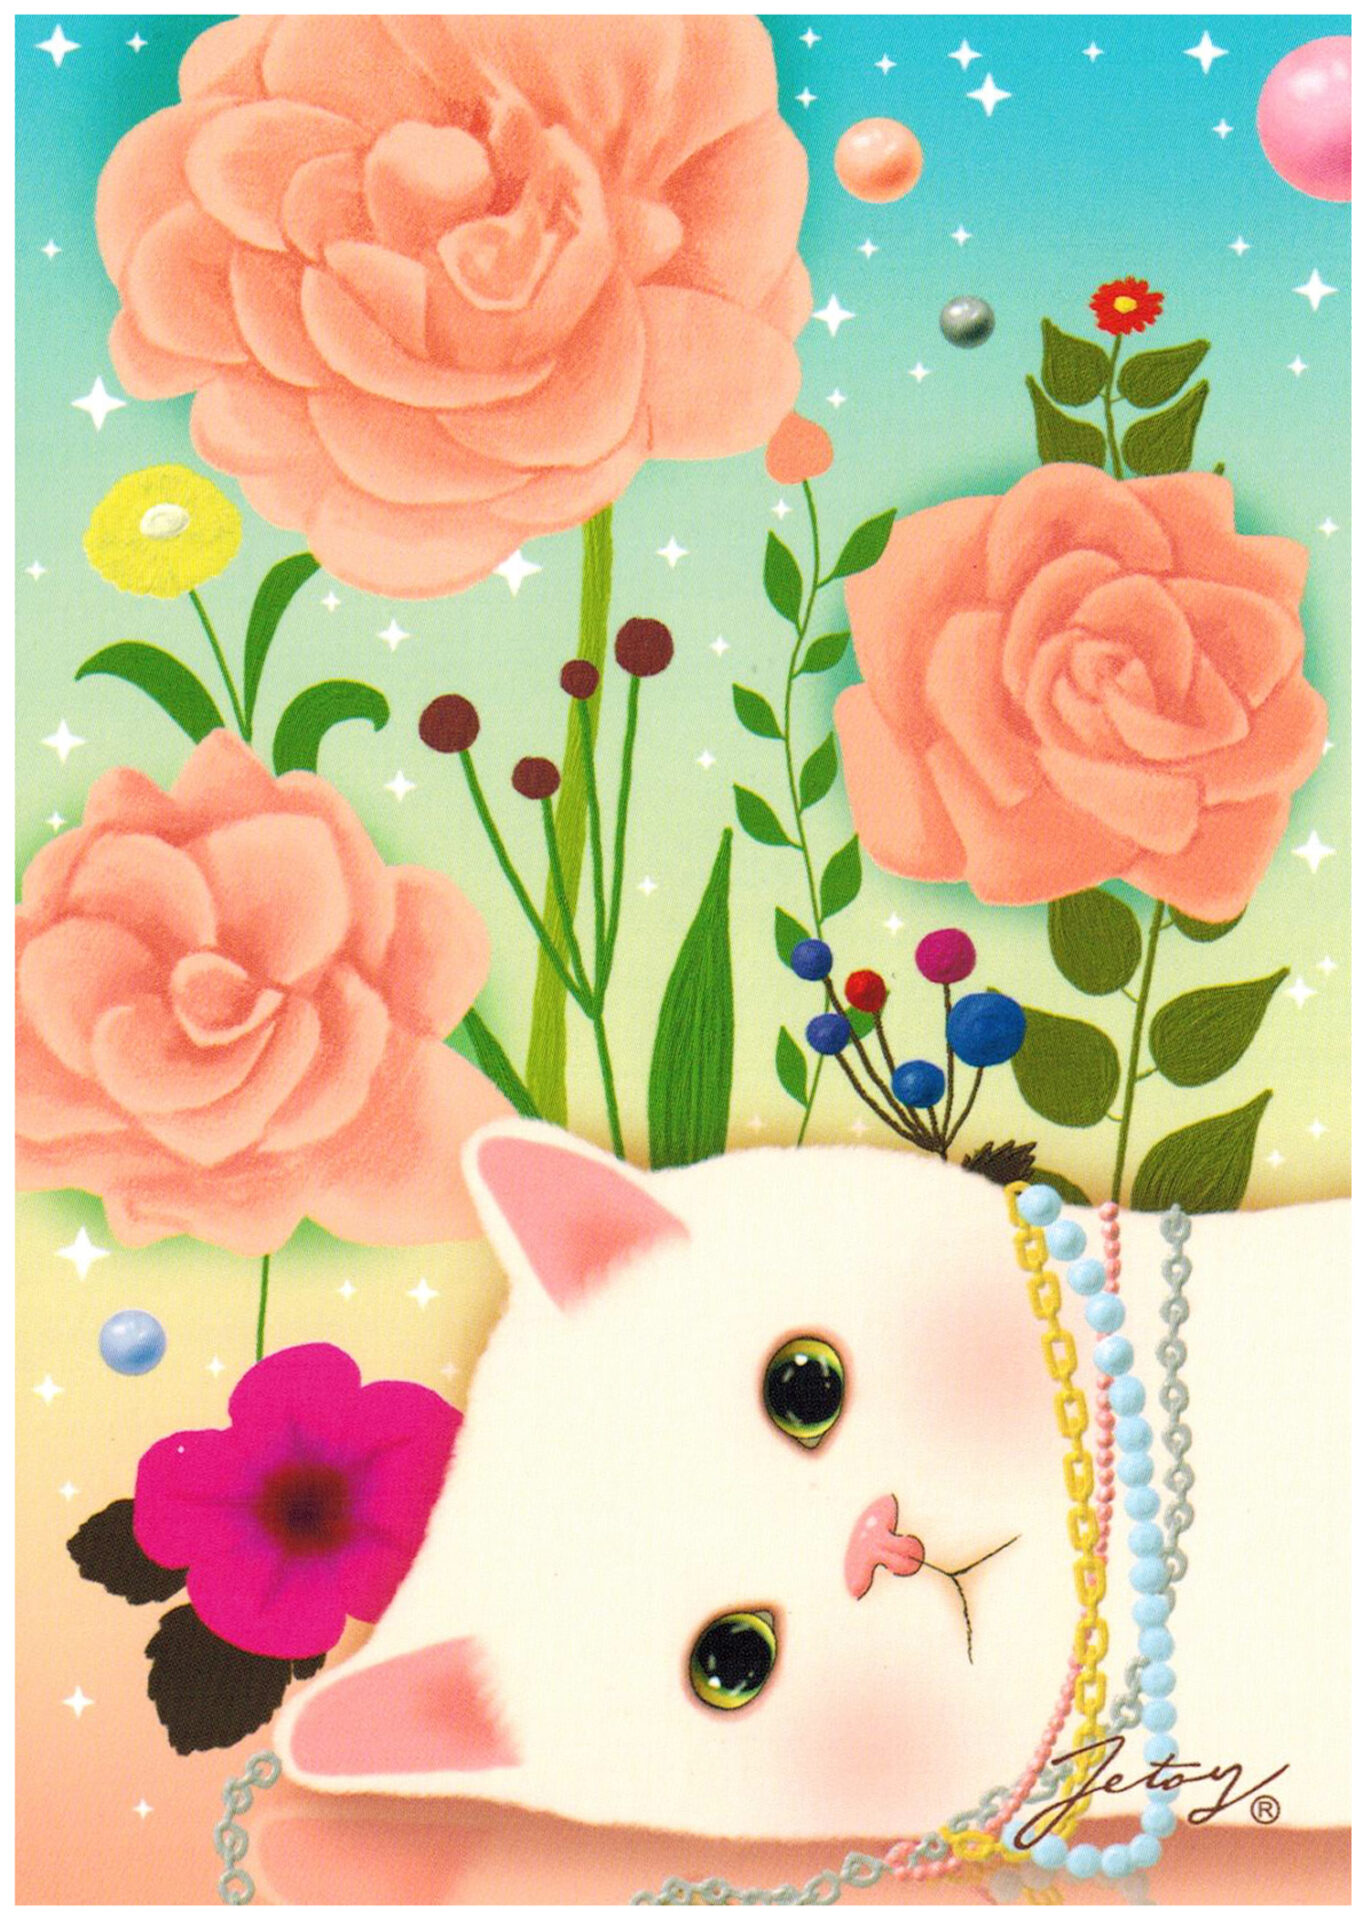 Jetoy Choo Choo Cat Postcard: Pink Rose